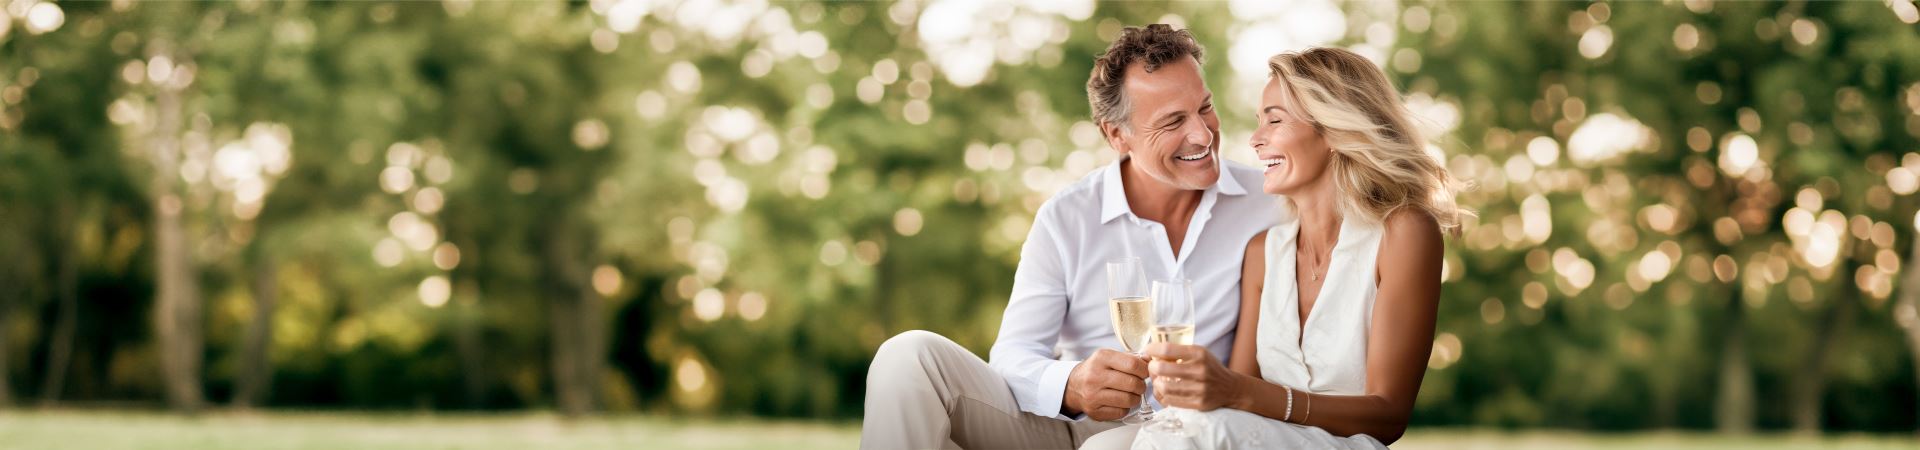 Esta fotografía muestra a una pareja (un señor y una señora) sentados y sonriéndose el uno al otro. Ambos sostienen una copa de champán en la mano. Al fondo se ven árboles y muchas zonas verdes.